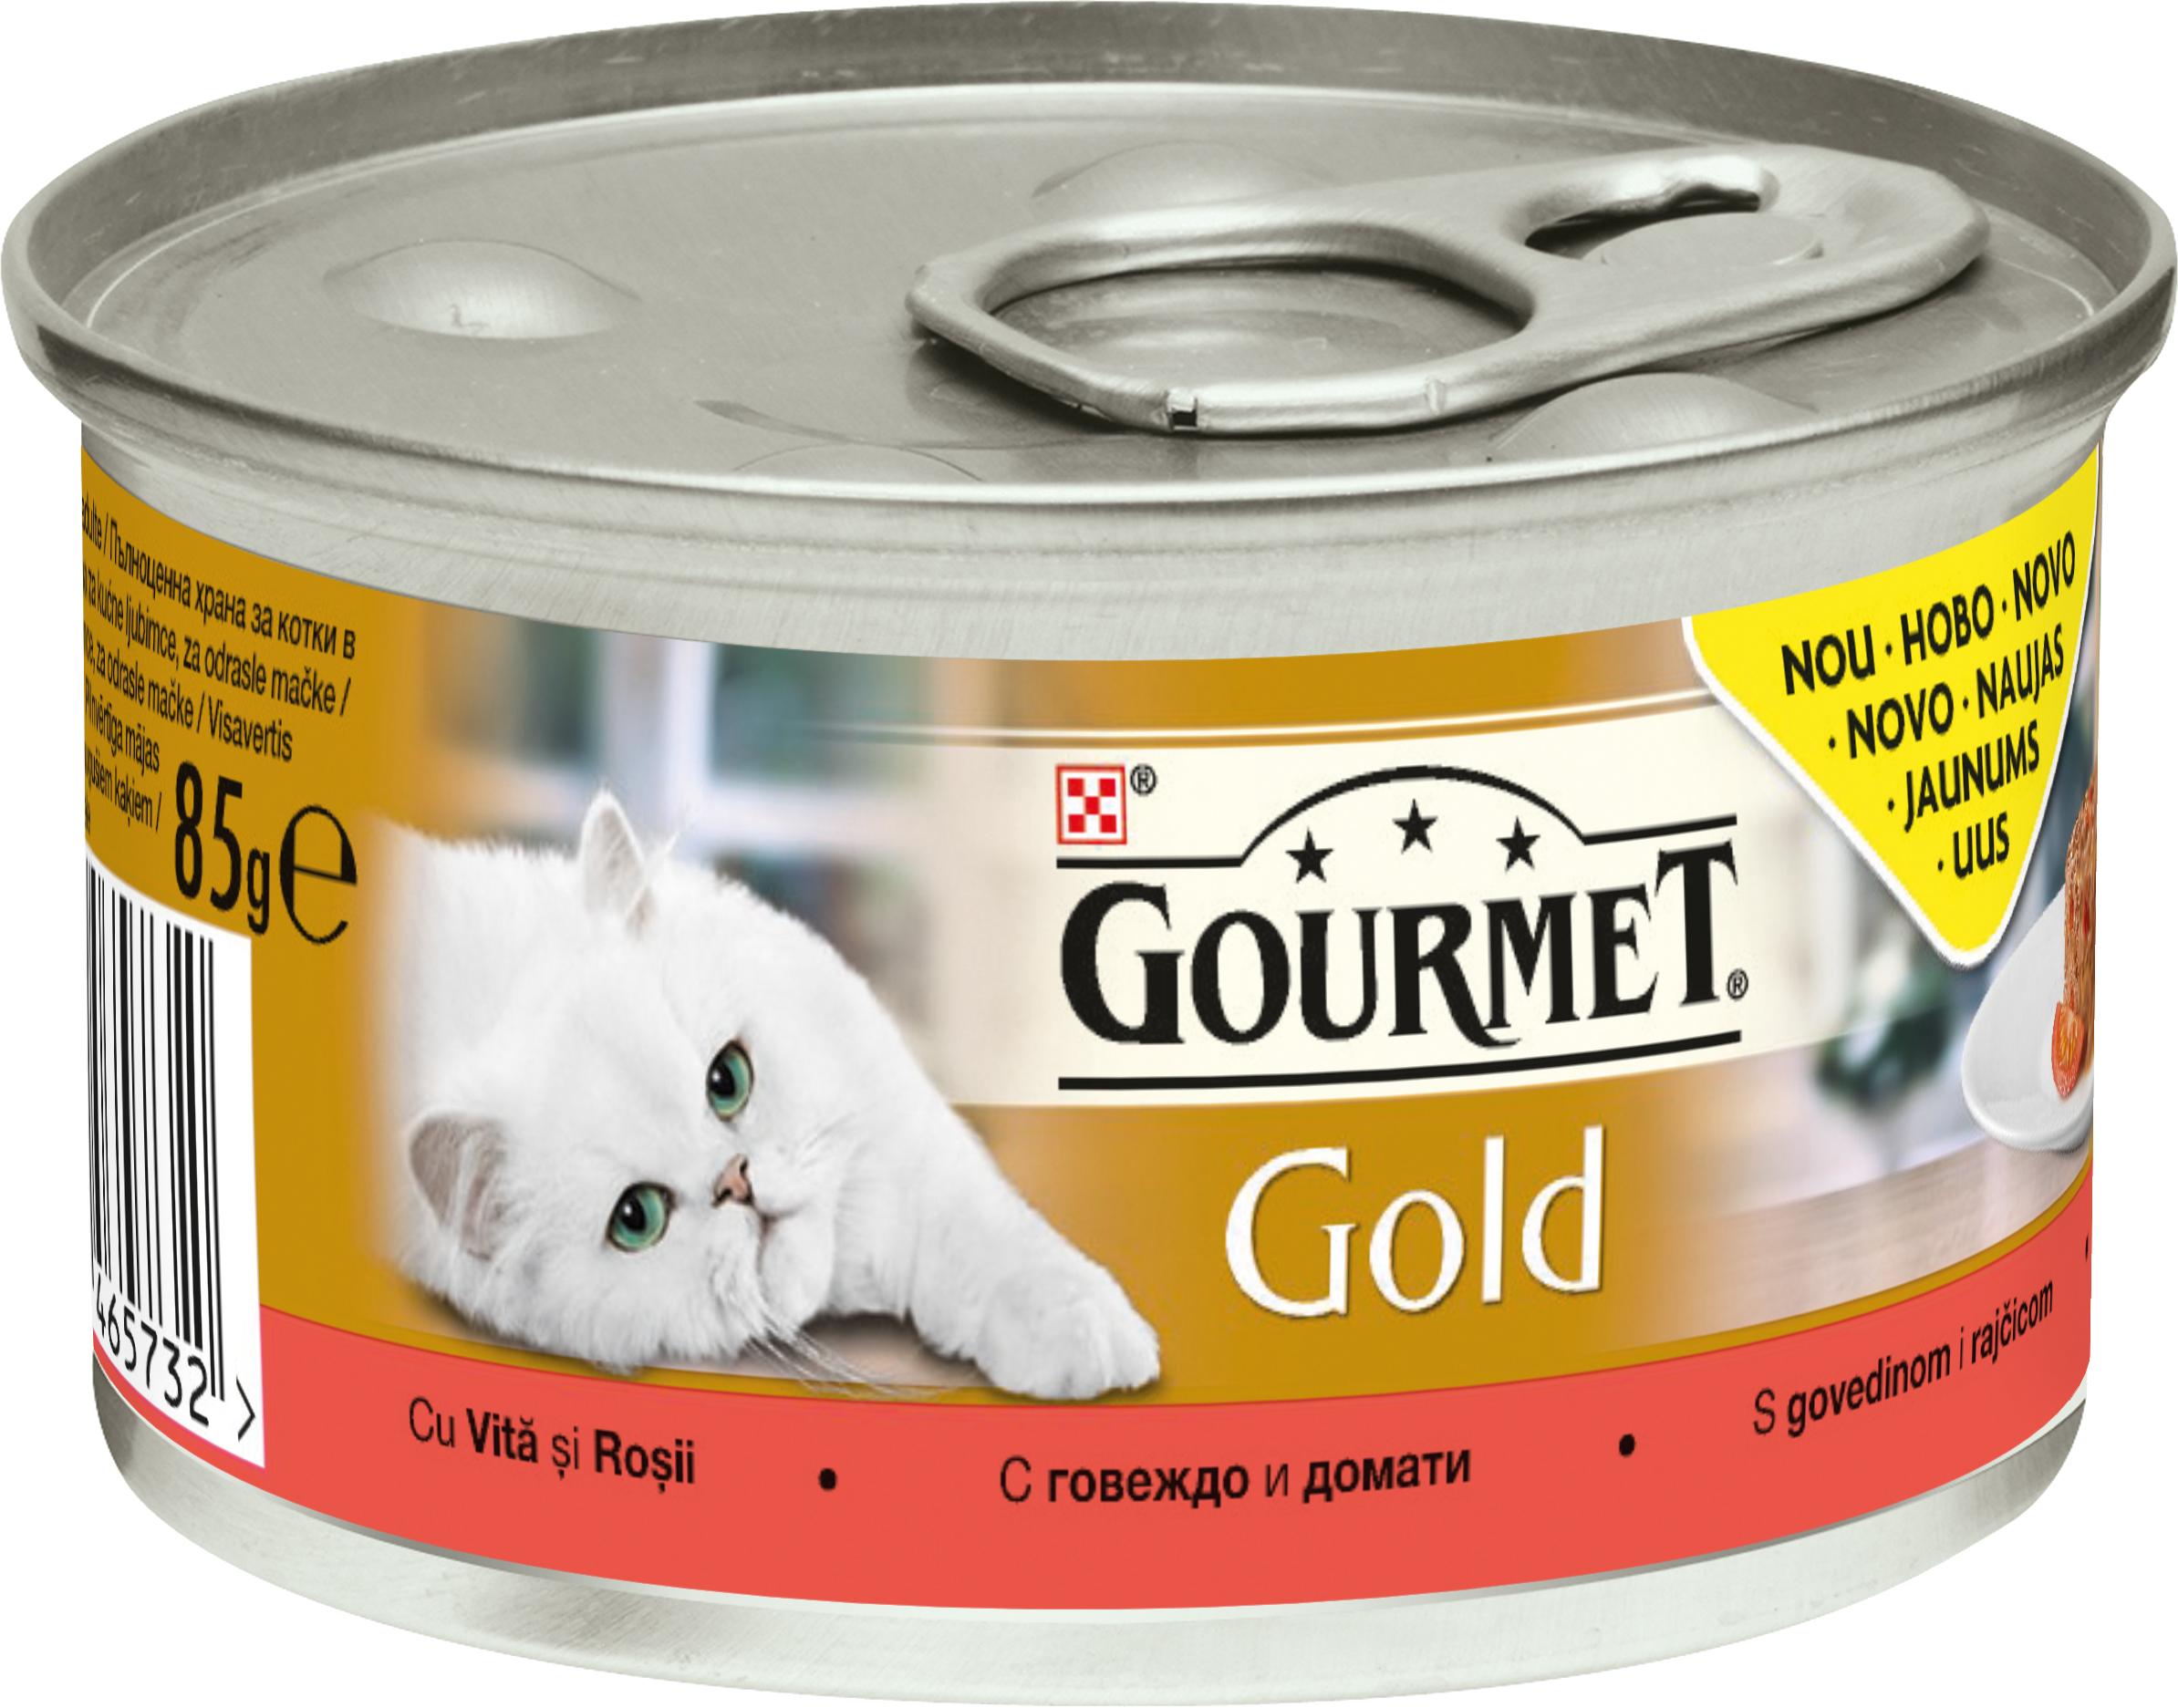 Slika za Hrana za mačke Gourmet Gold savory cake govedina 85g